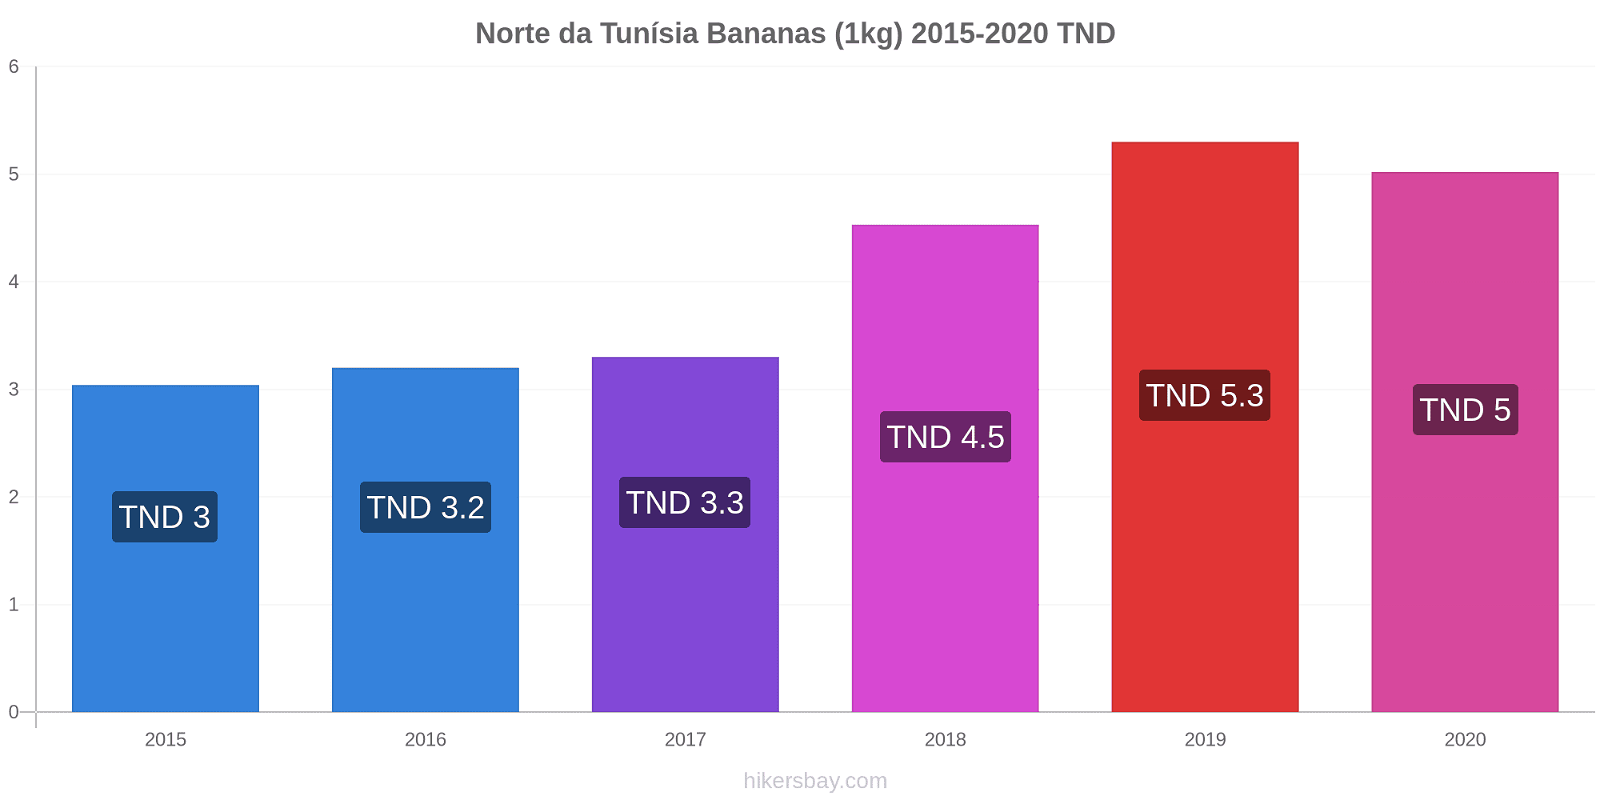 Norte da Tunísia variação de preço Banana (1kg) hikersbay.com